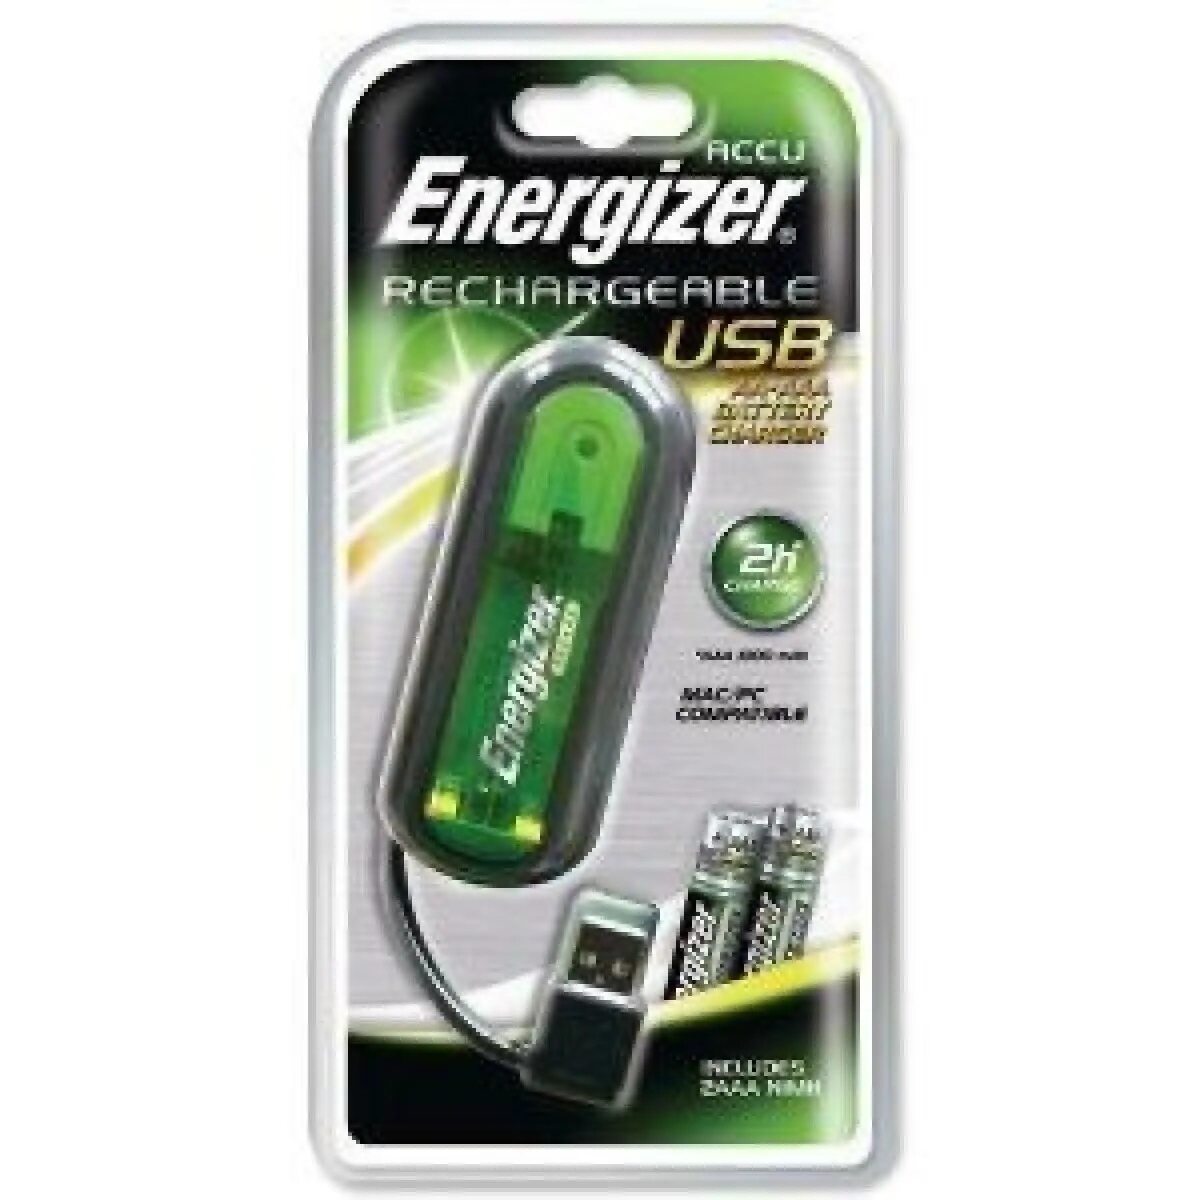 Зарядное устройство Energizer NIMH Battery Charger. Ni MH Energizer зарядное устройство. Energizer зарядное устройство USB. Energizer Rechargeable зарядки.